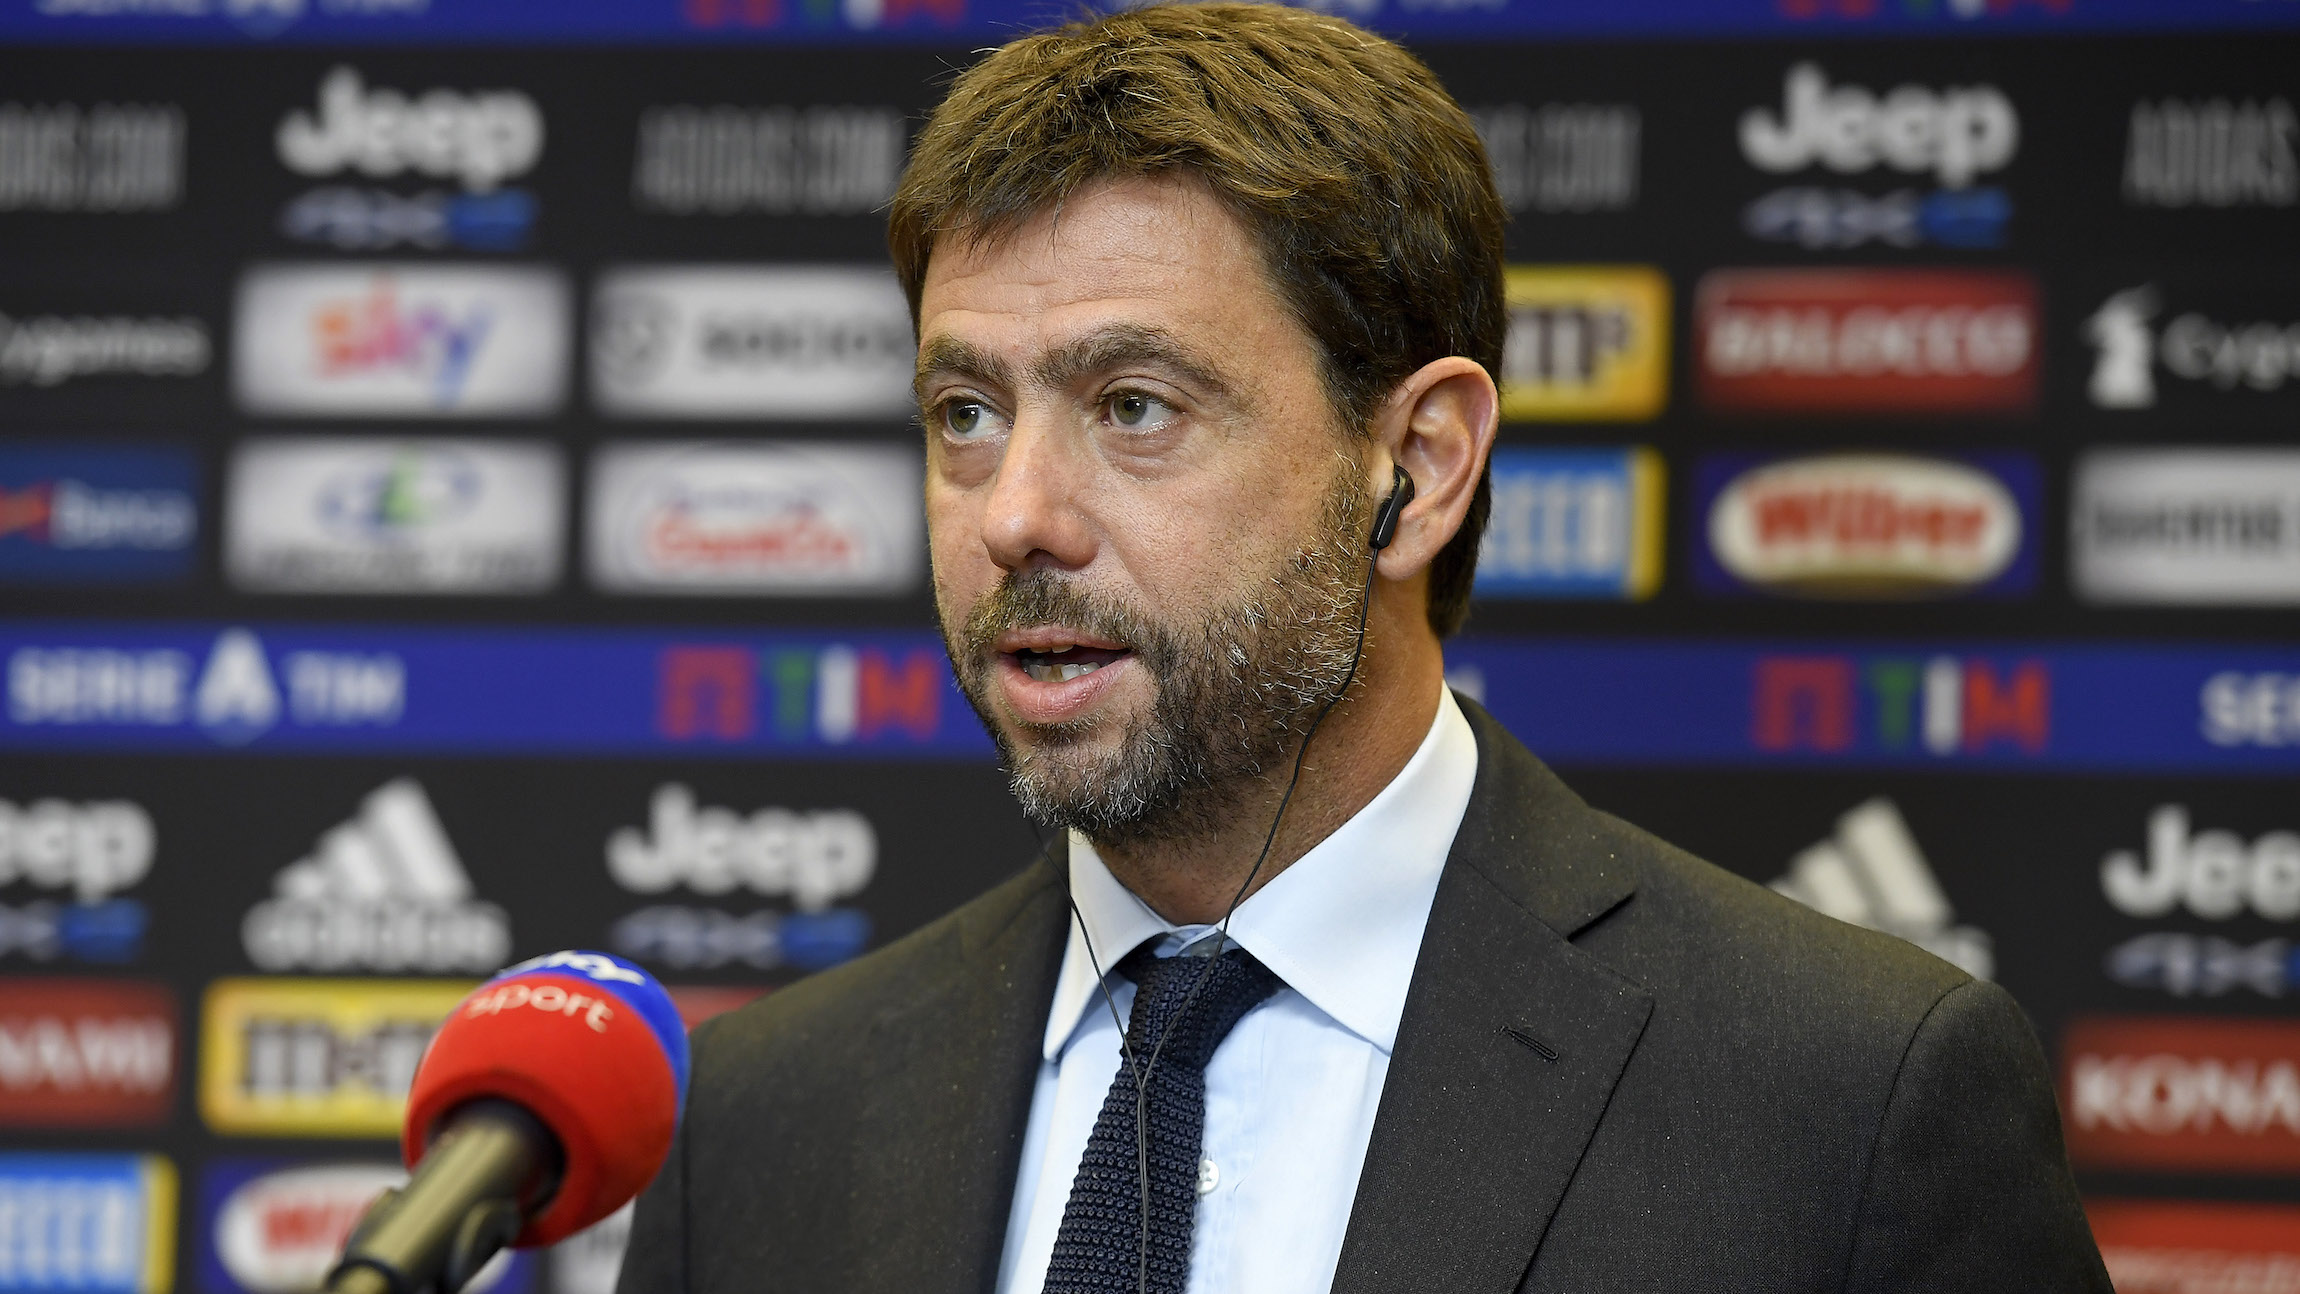 Calciopoli, la Juventus non si arrende: “Vogliamo la riassegnazione degli scudetti”